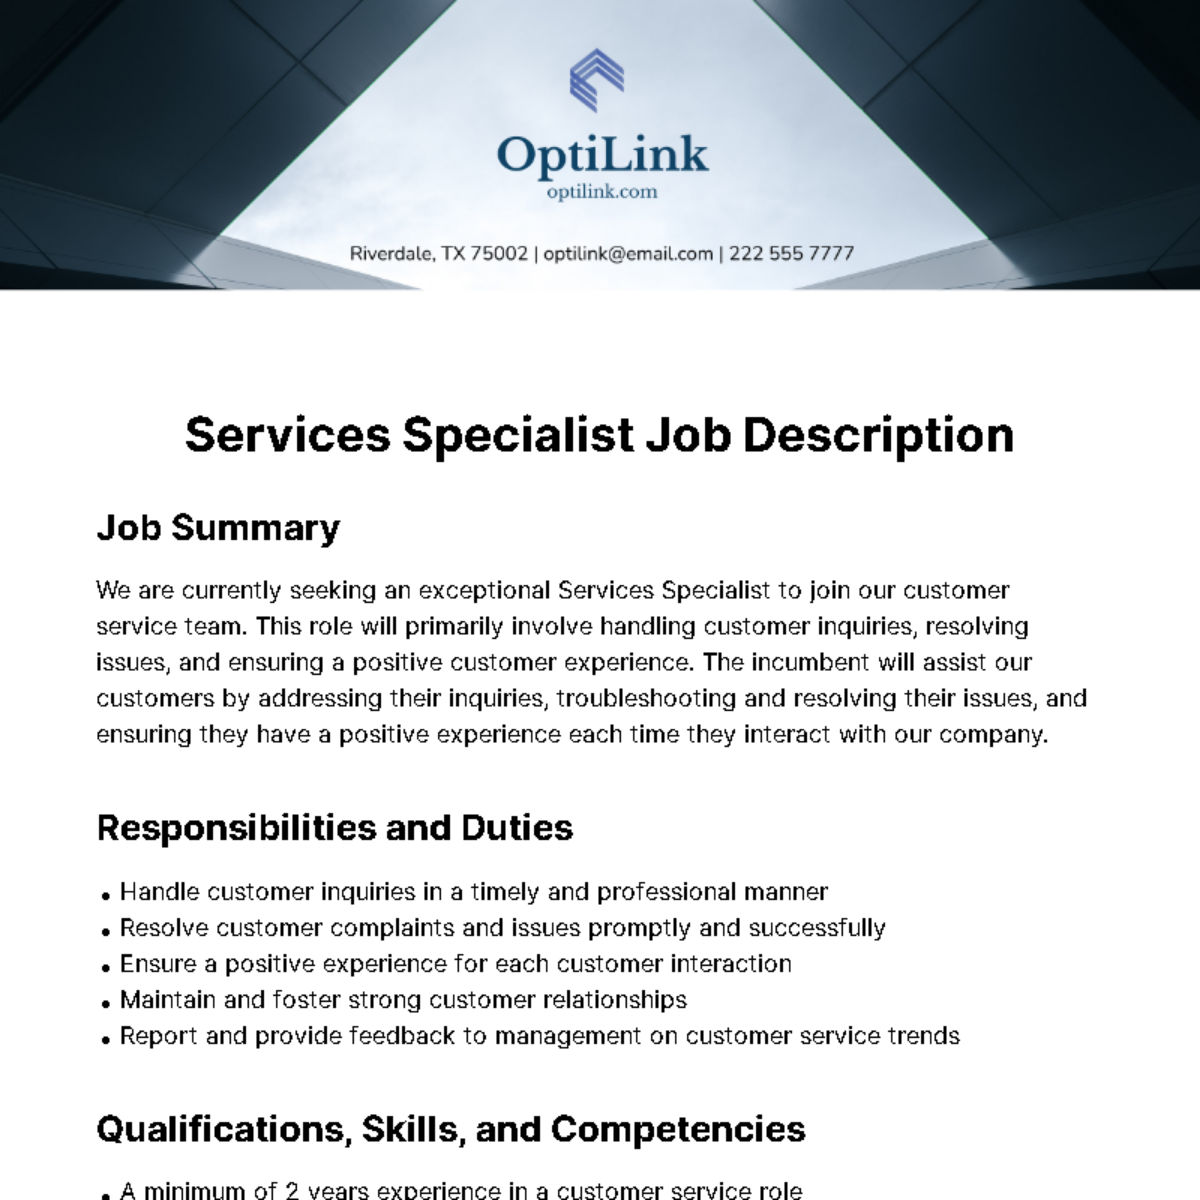 Services Specialist Job Description Template